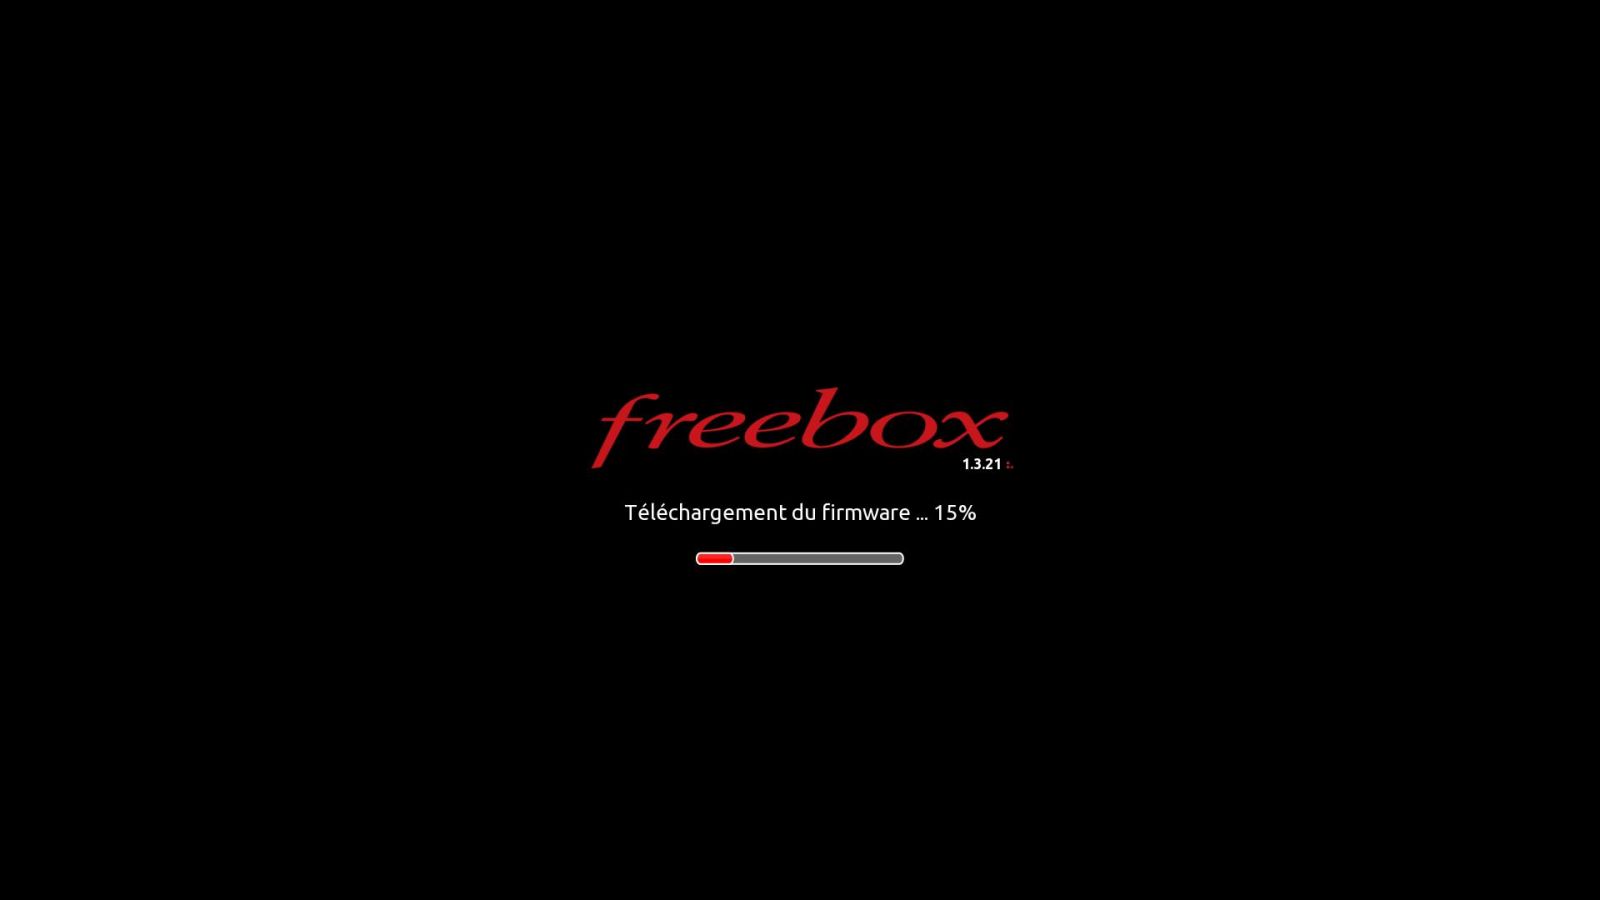 Free : une Révolution pour la nouvelle Freebox? (mise à jour